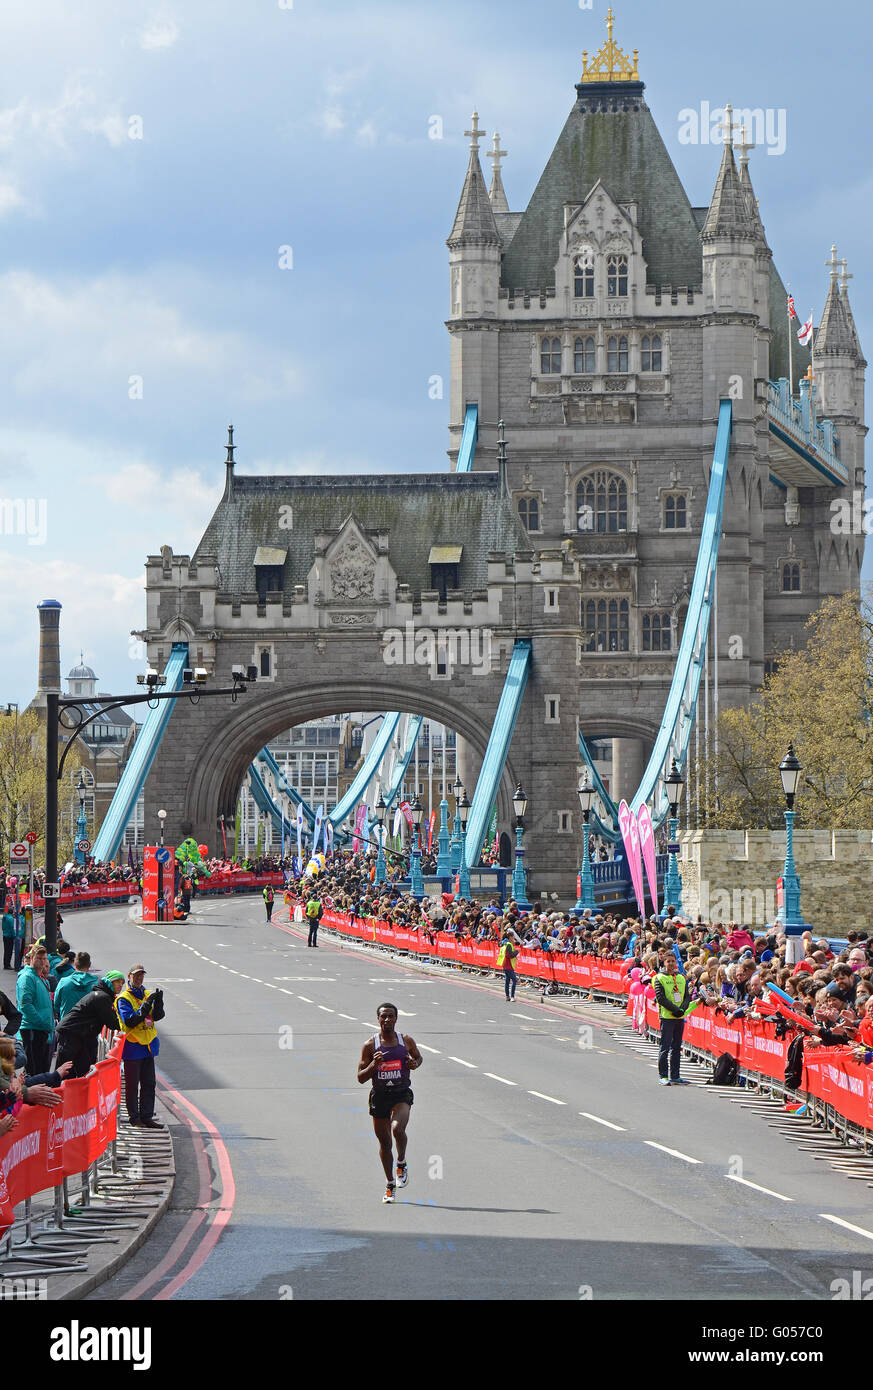 2016 Le Marathon de Londres Virgin Money à Tower Hill.Lemme, Sisay (ETH) a terminé 7e. Tower Bridge derrière Banque D'Images